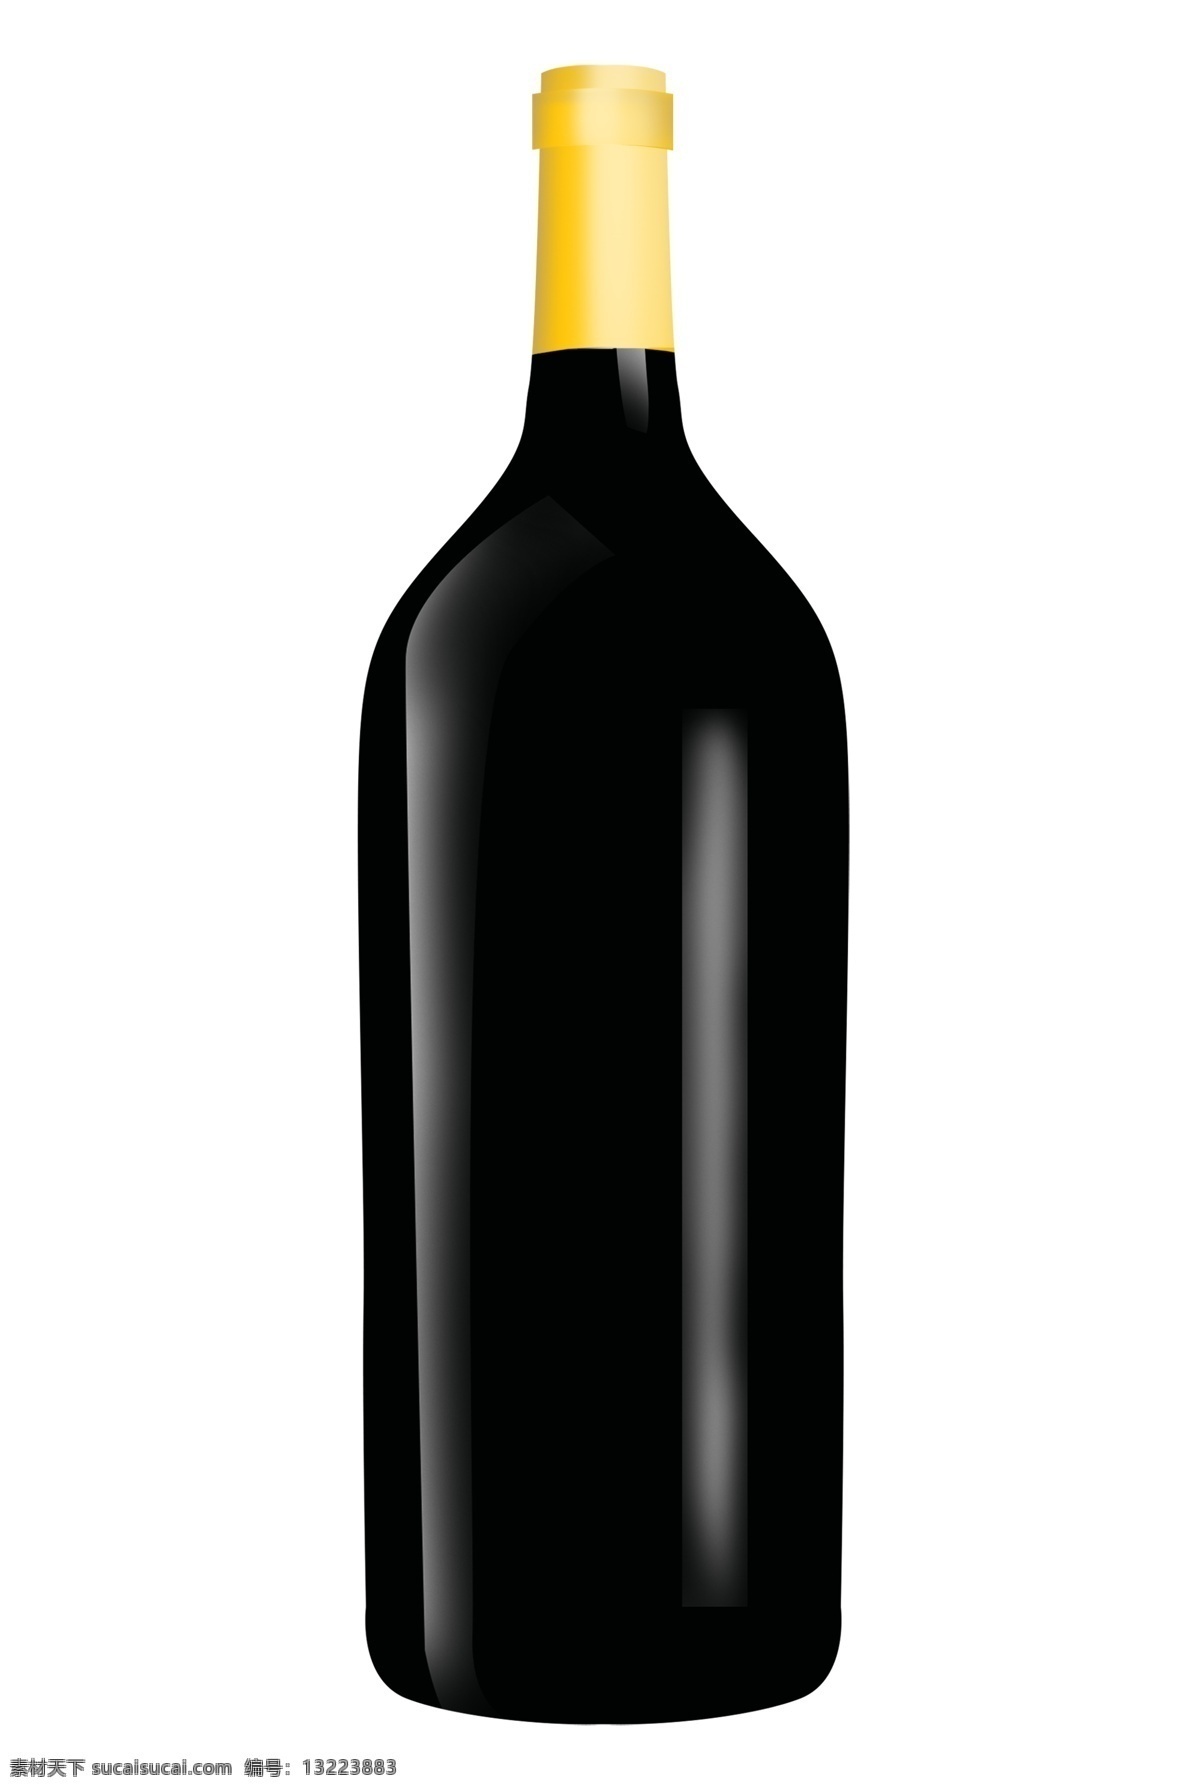 瓶 白兰地 红酒 插画 黑色 酒瓶 红酒瓶 一瓶红酒插图 瓶装红酒 高档红酒 葡萄酒